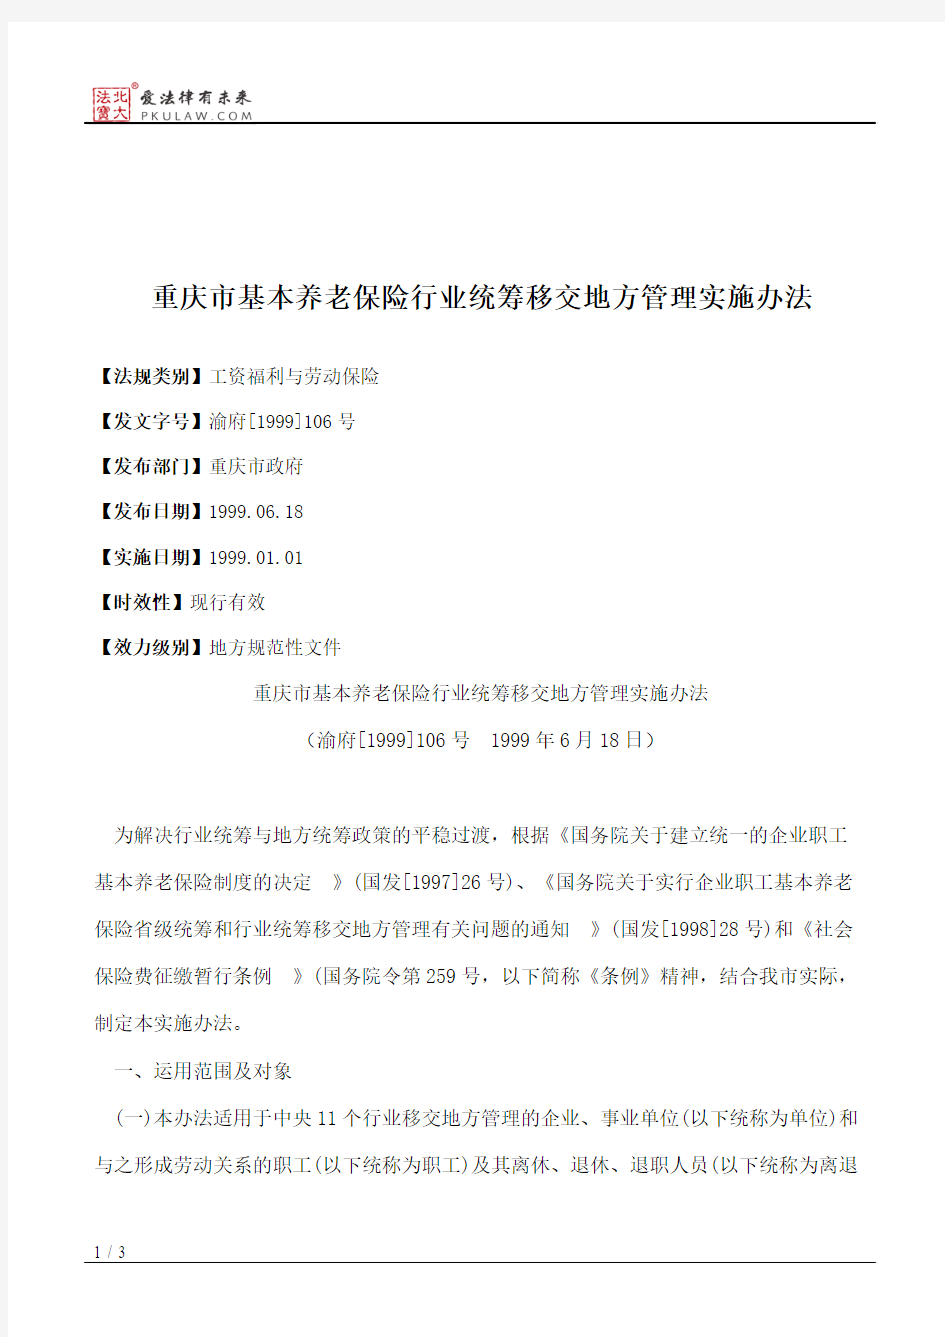 重庆市基本养老保险行业统筹移交地方管理实施办法